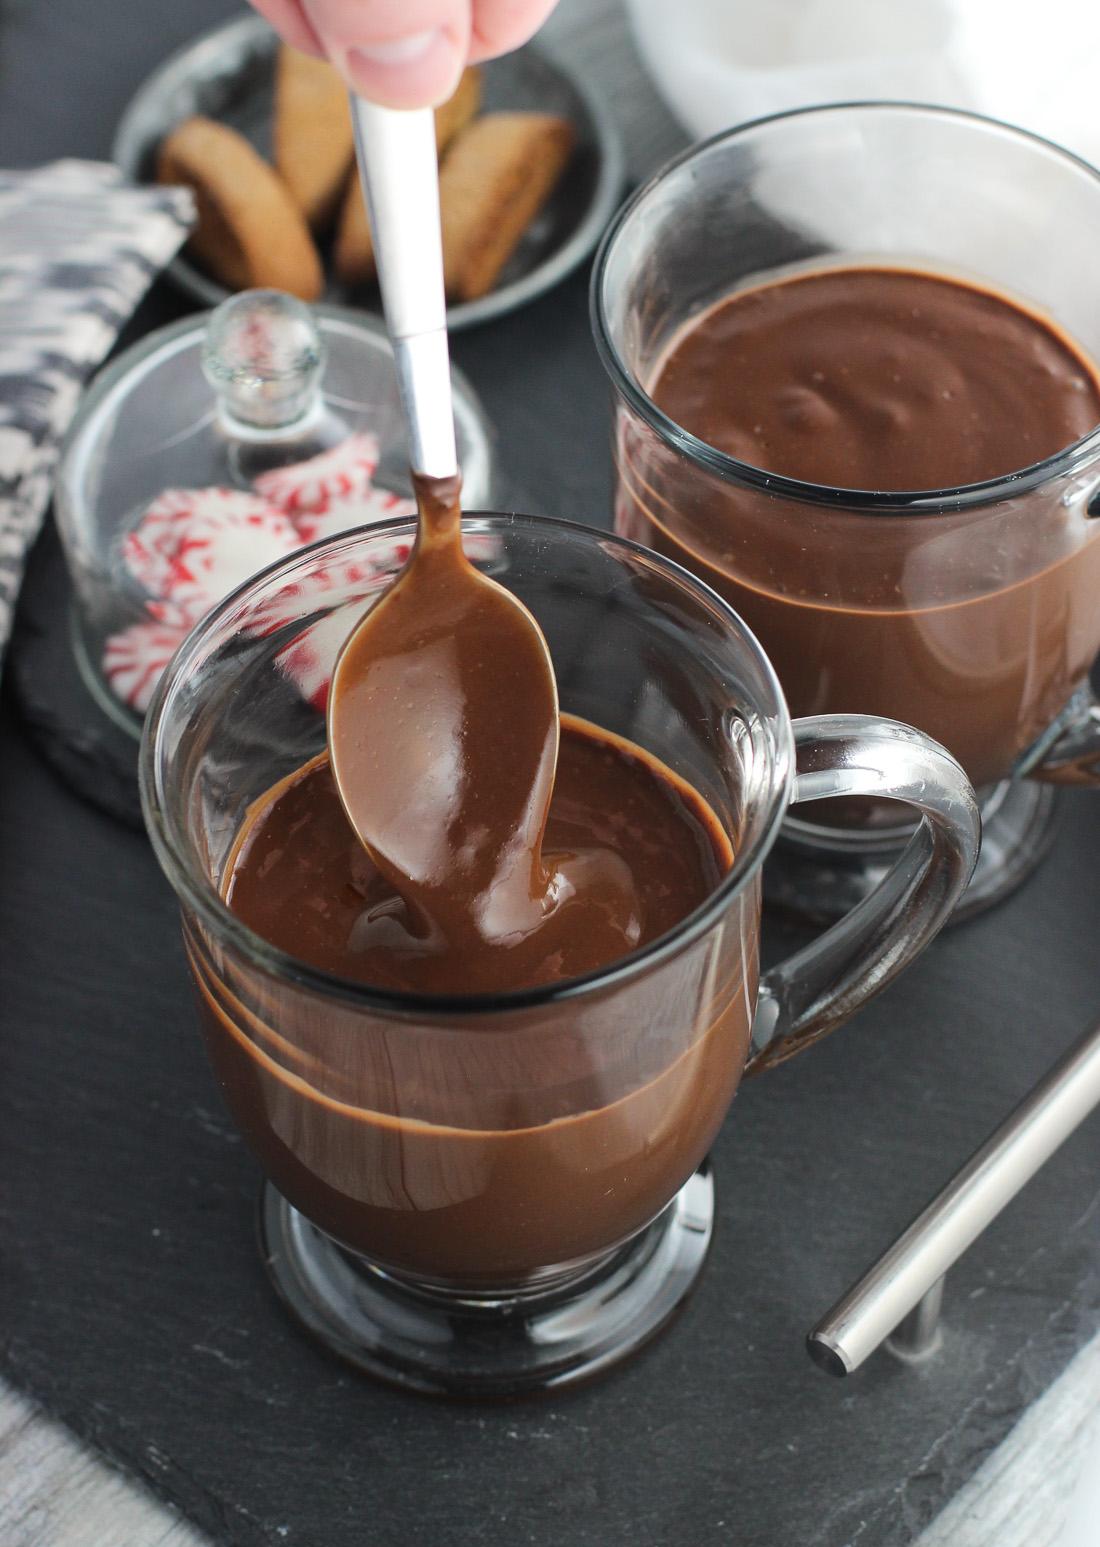 Topla čokolada smanjuje rizik od demencije